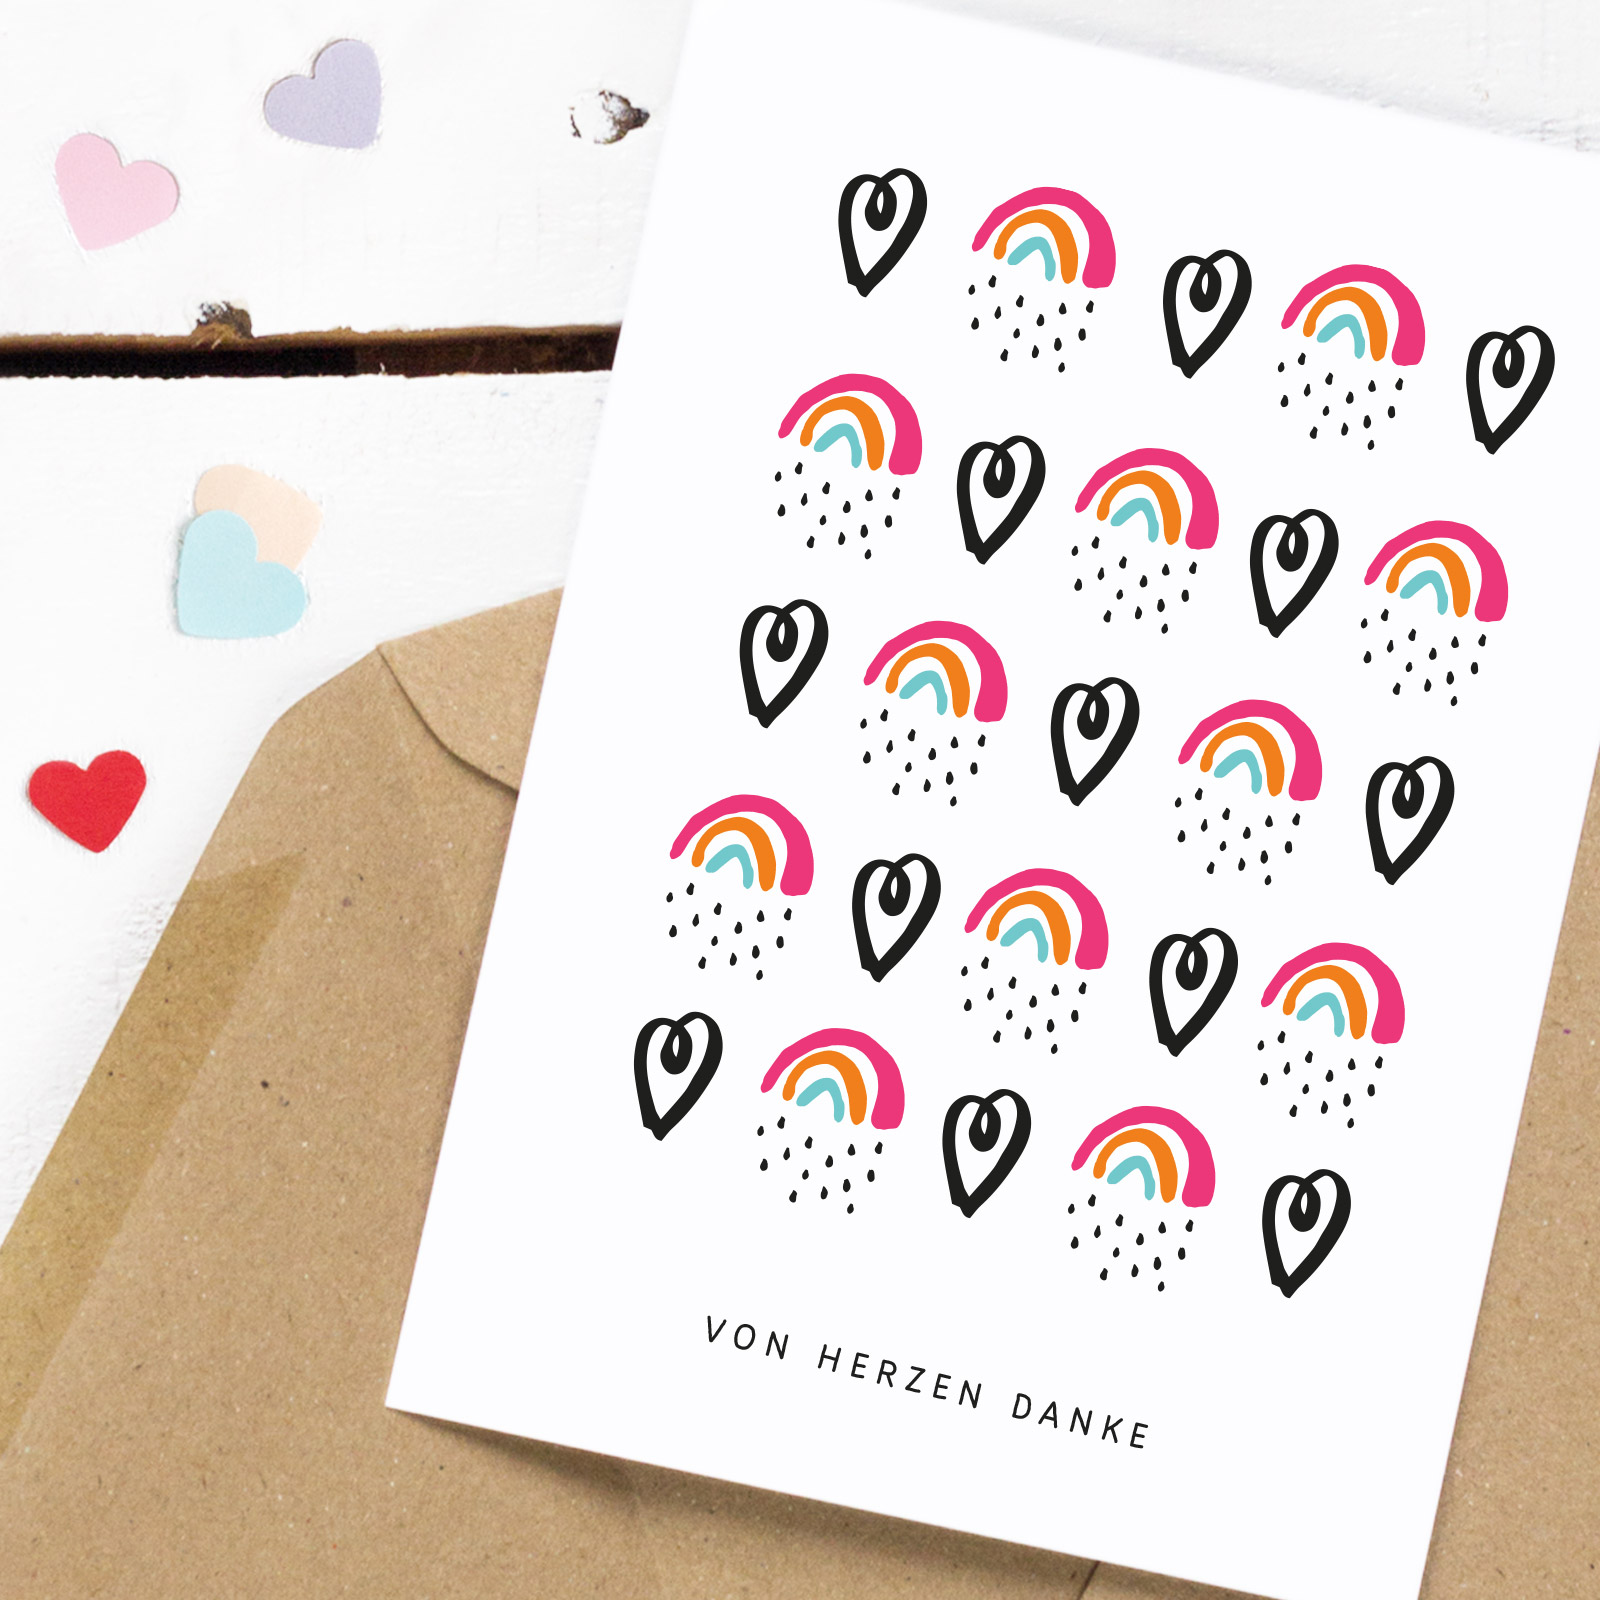 Postkarte mit abwechselndem Muster aus schwarzen Herzen und Regenbogen, darunter der Spruch "Von Herzen Danke"